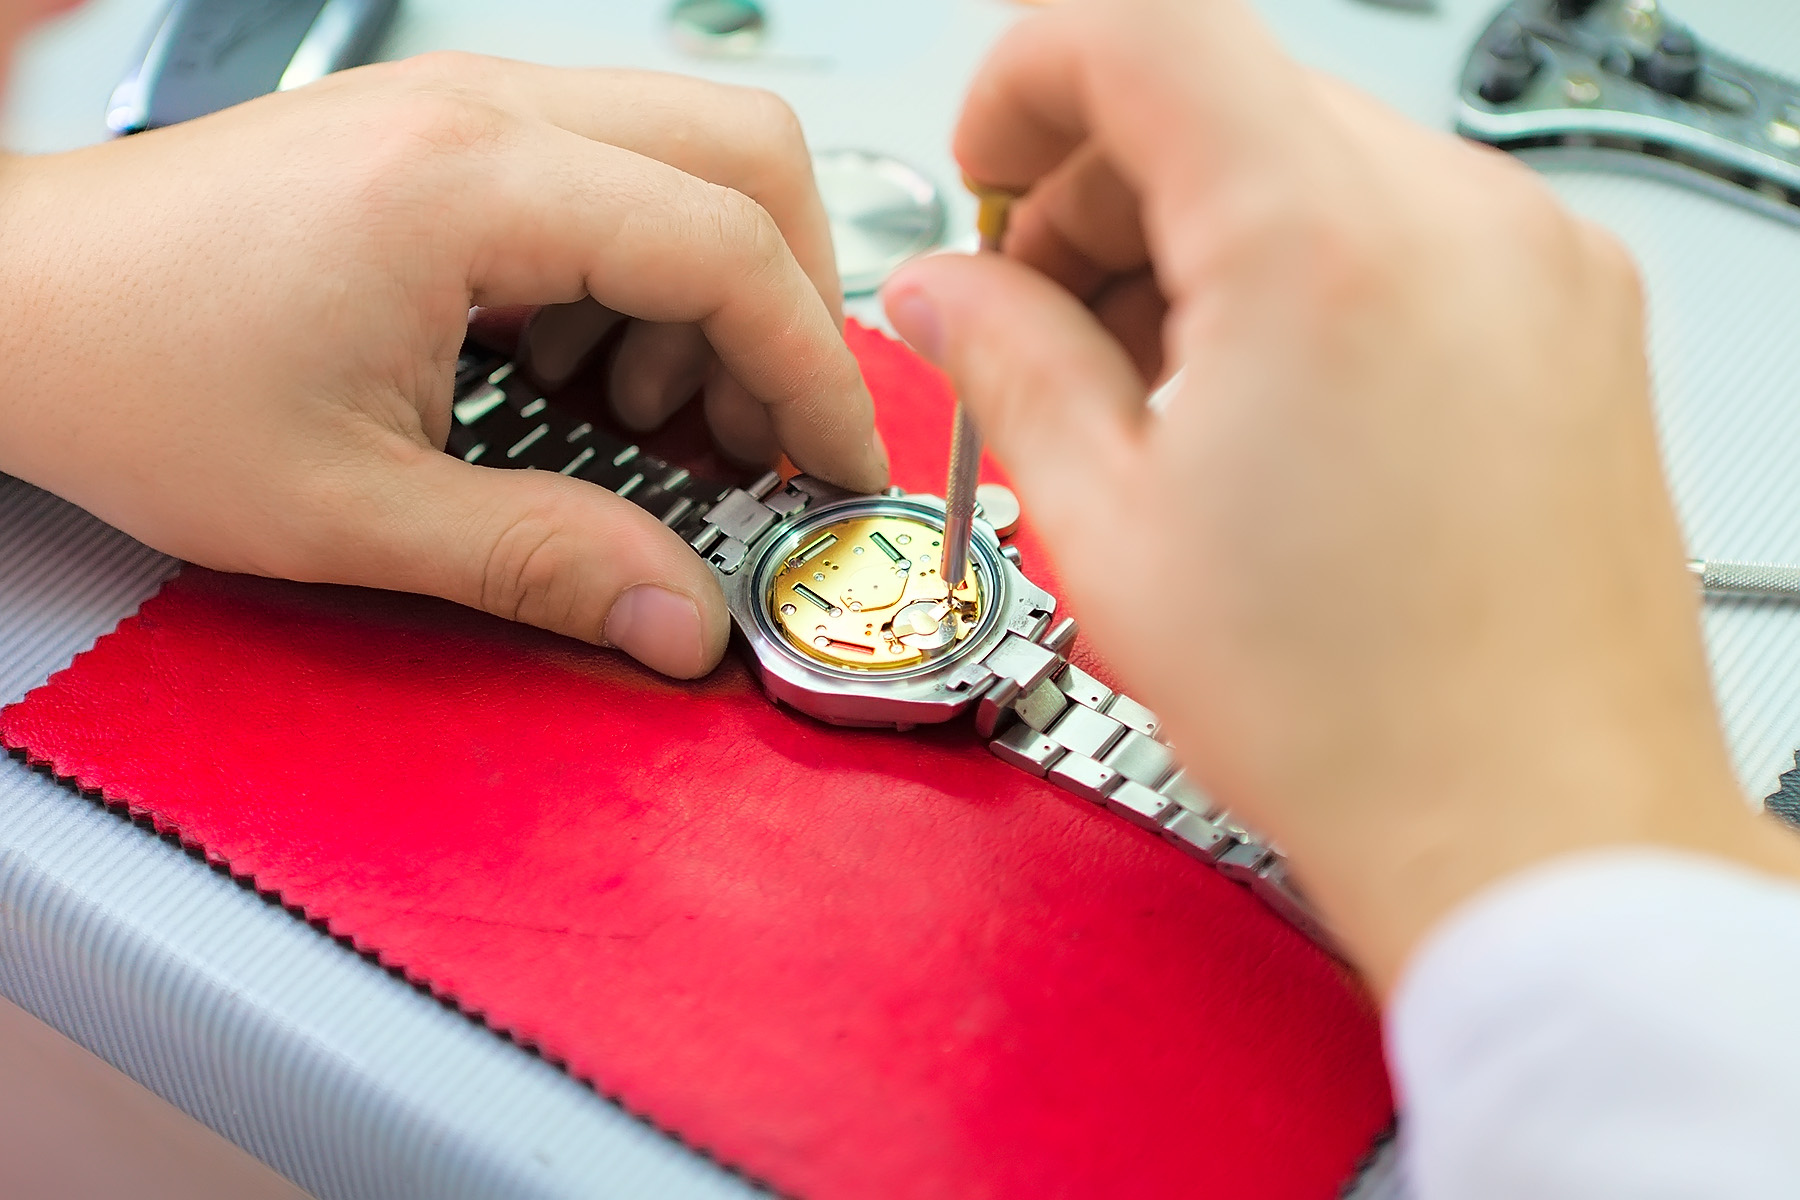 Фирма занимается ремонтом часов приобретение комплектующих. Швейцарские часы мастерская. Чинит часы. Ремонтирует часы. Швейцарские часы сломались.